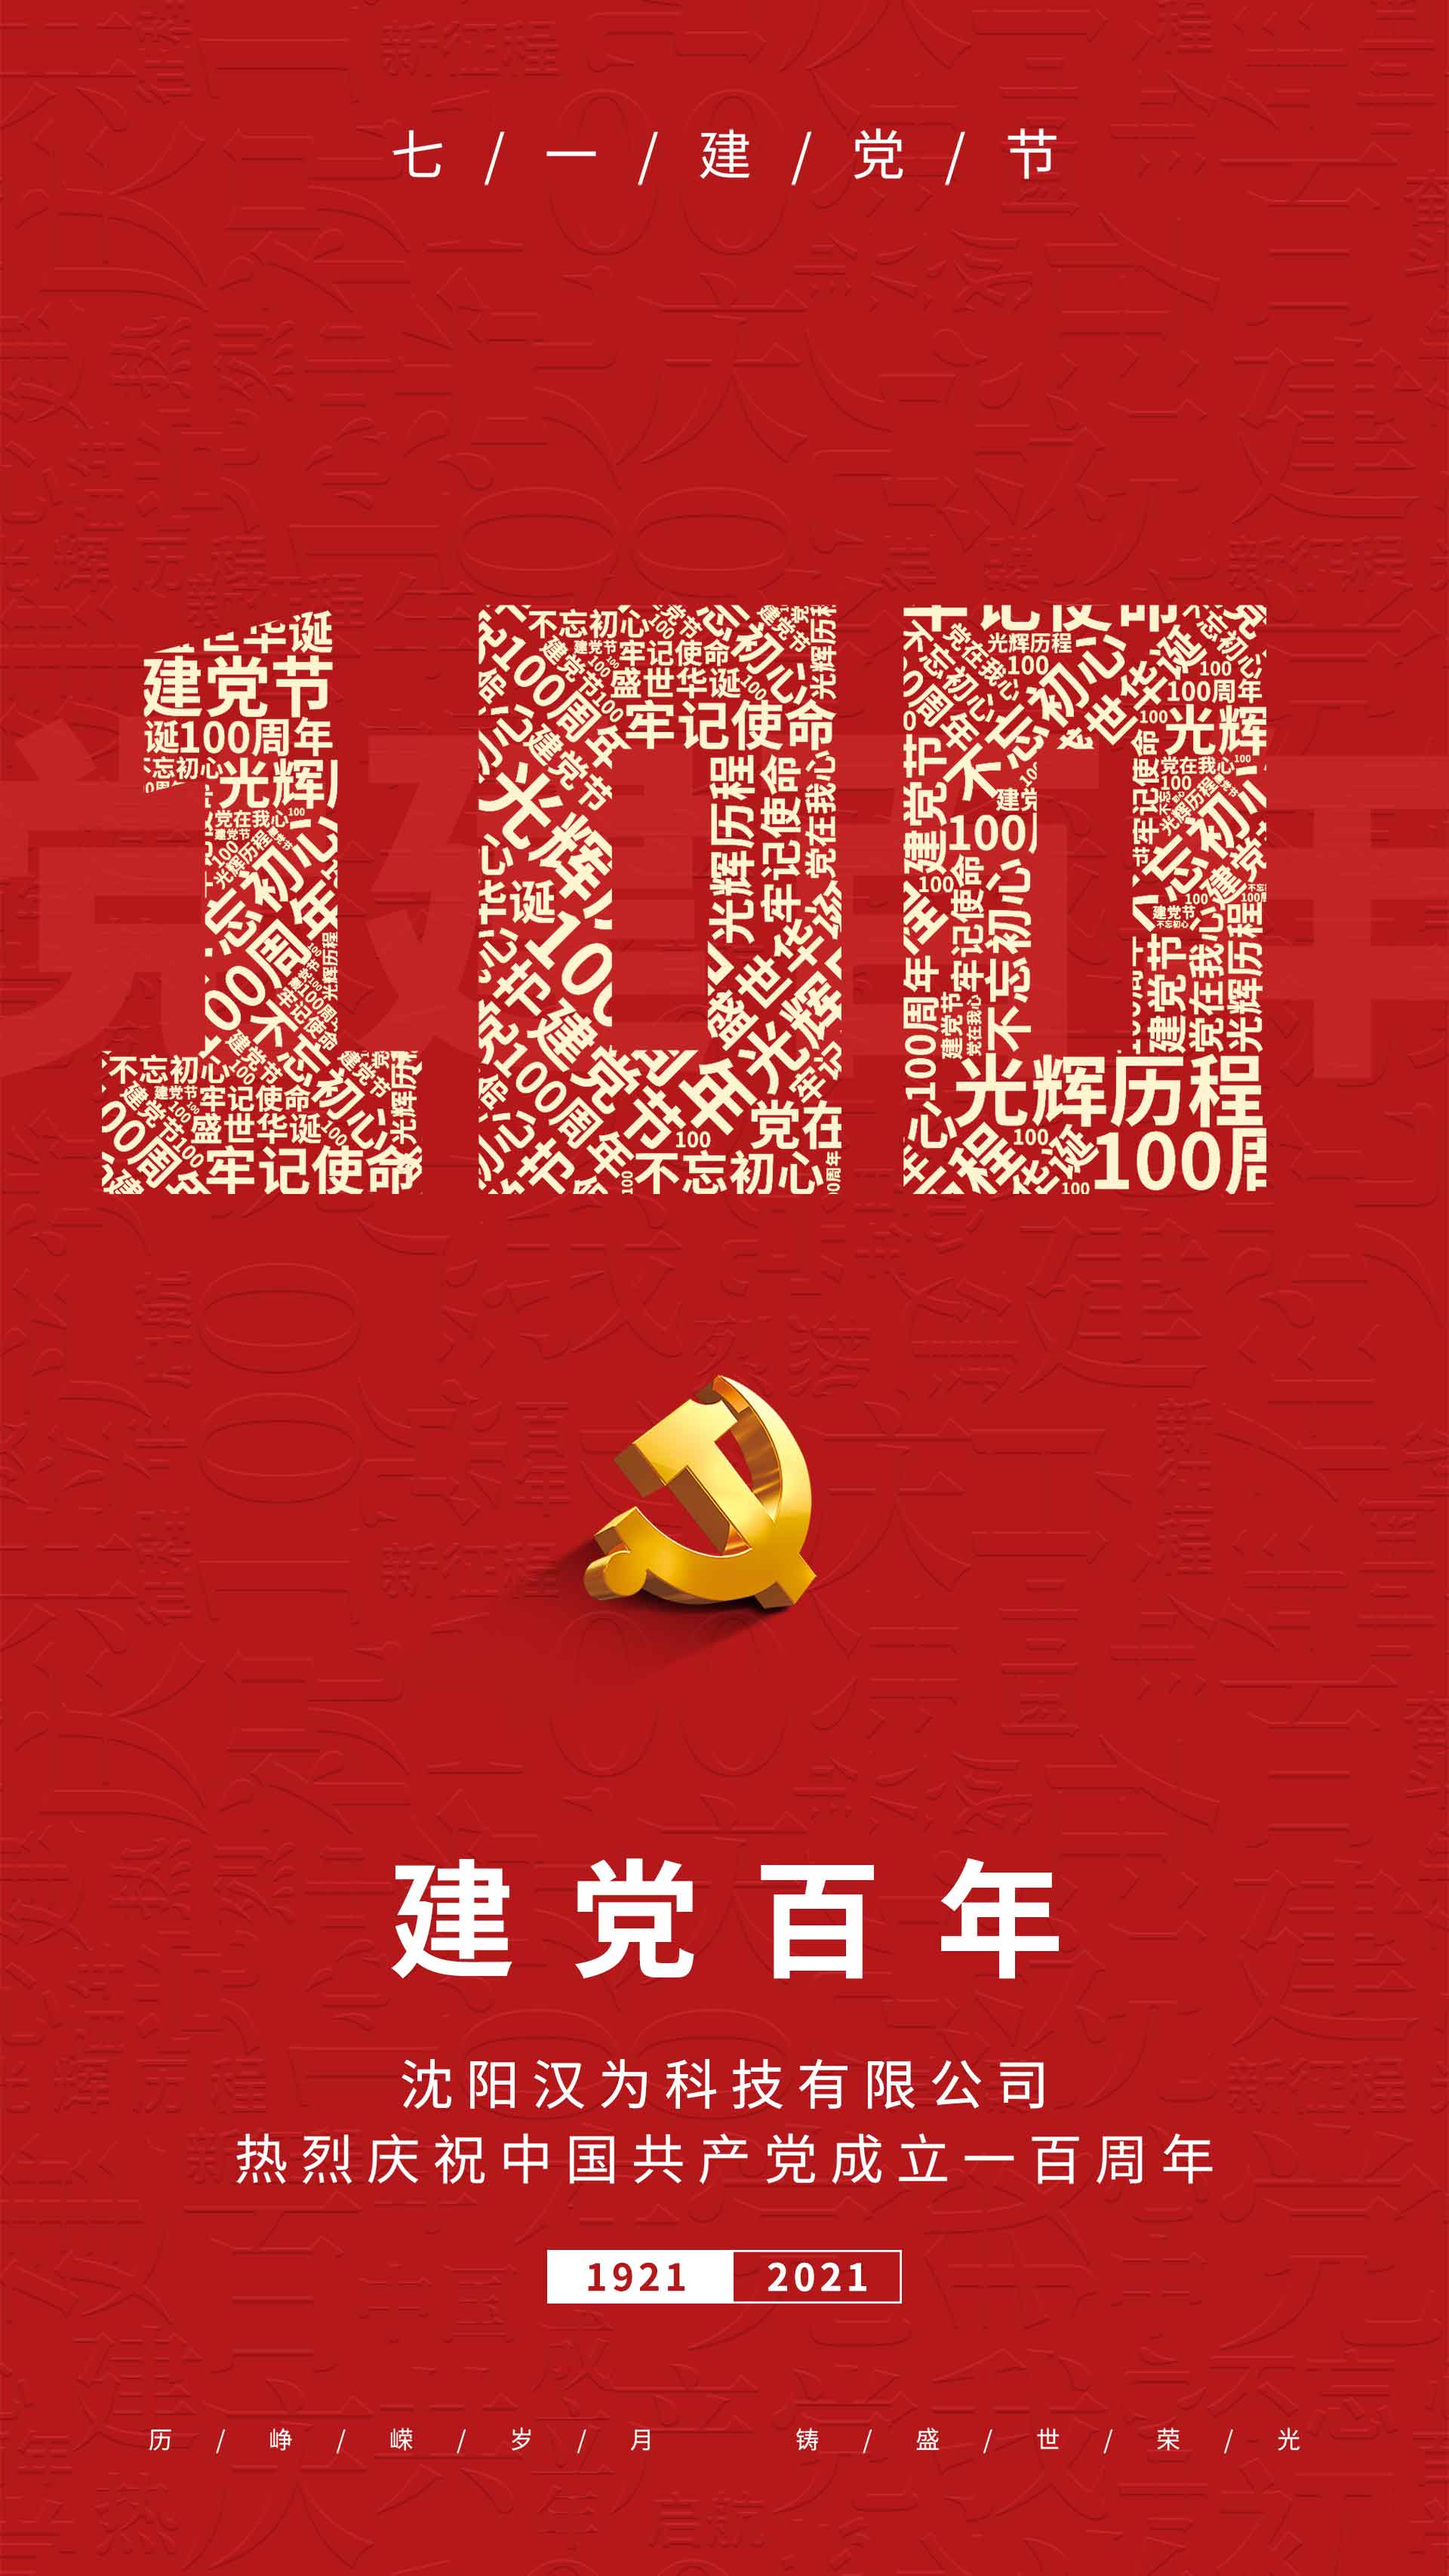 划片机、晶圆切割机的专业生产厂家热烈庆祝共产党建立一百周年！